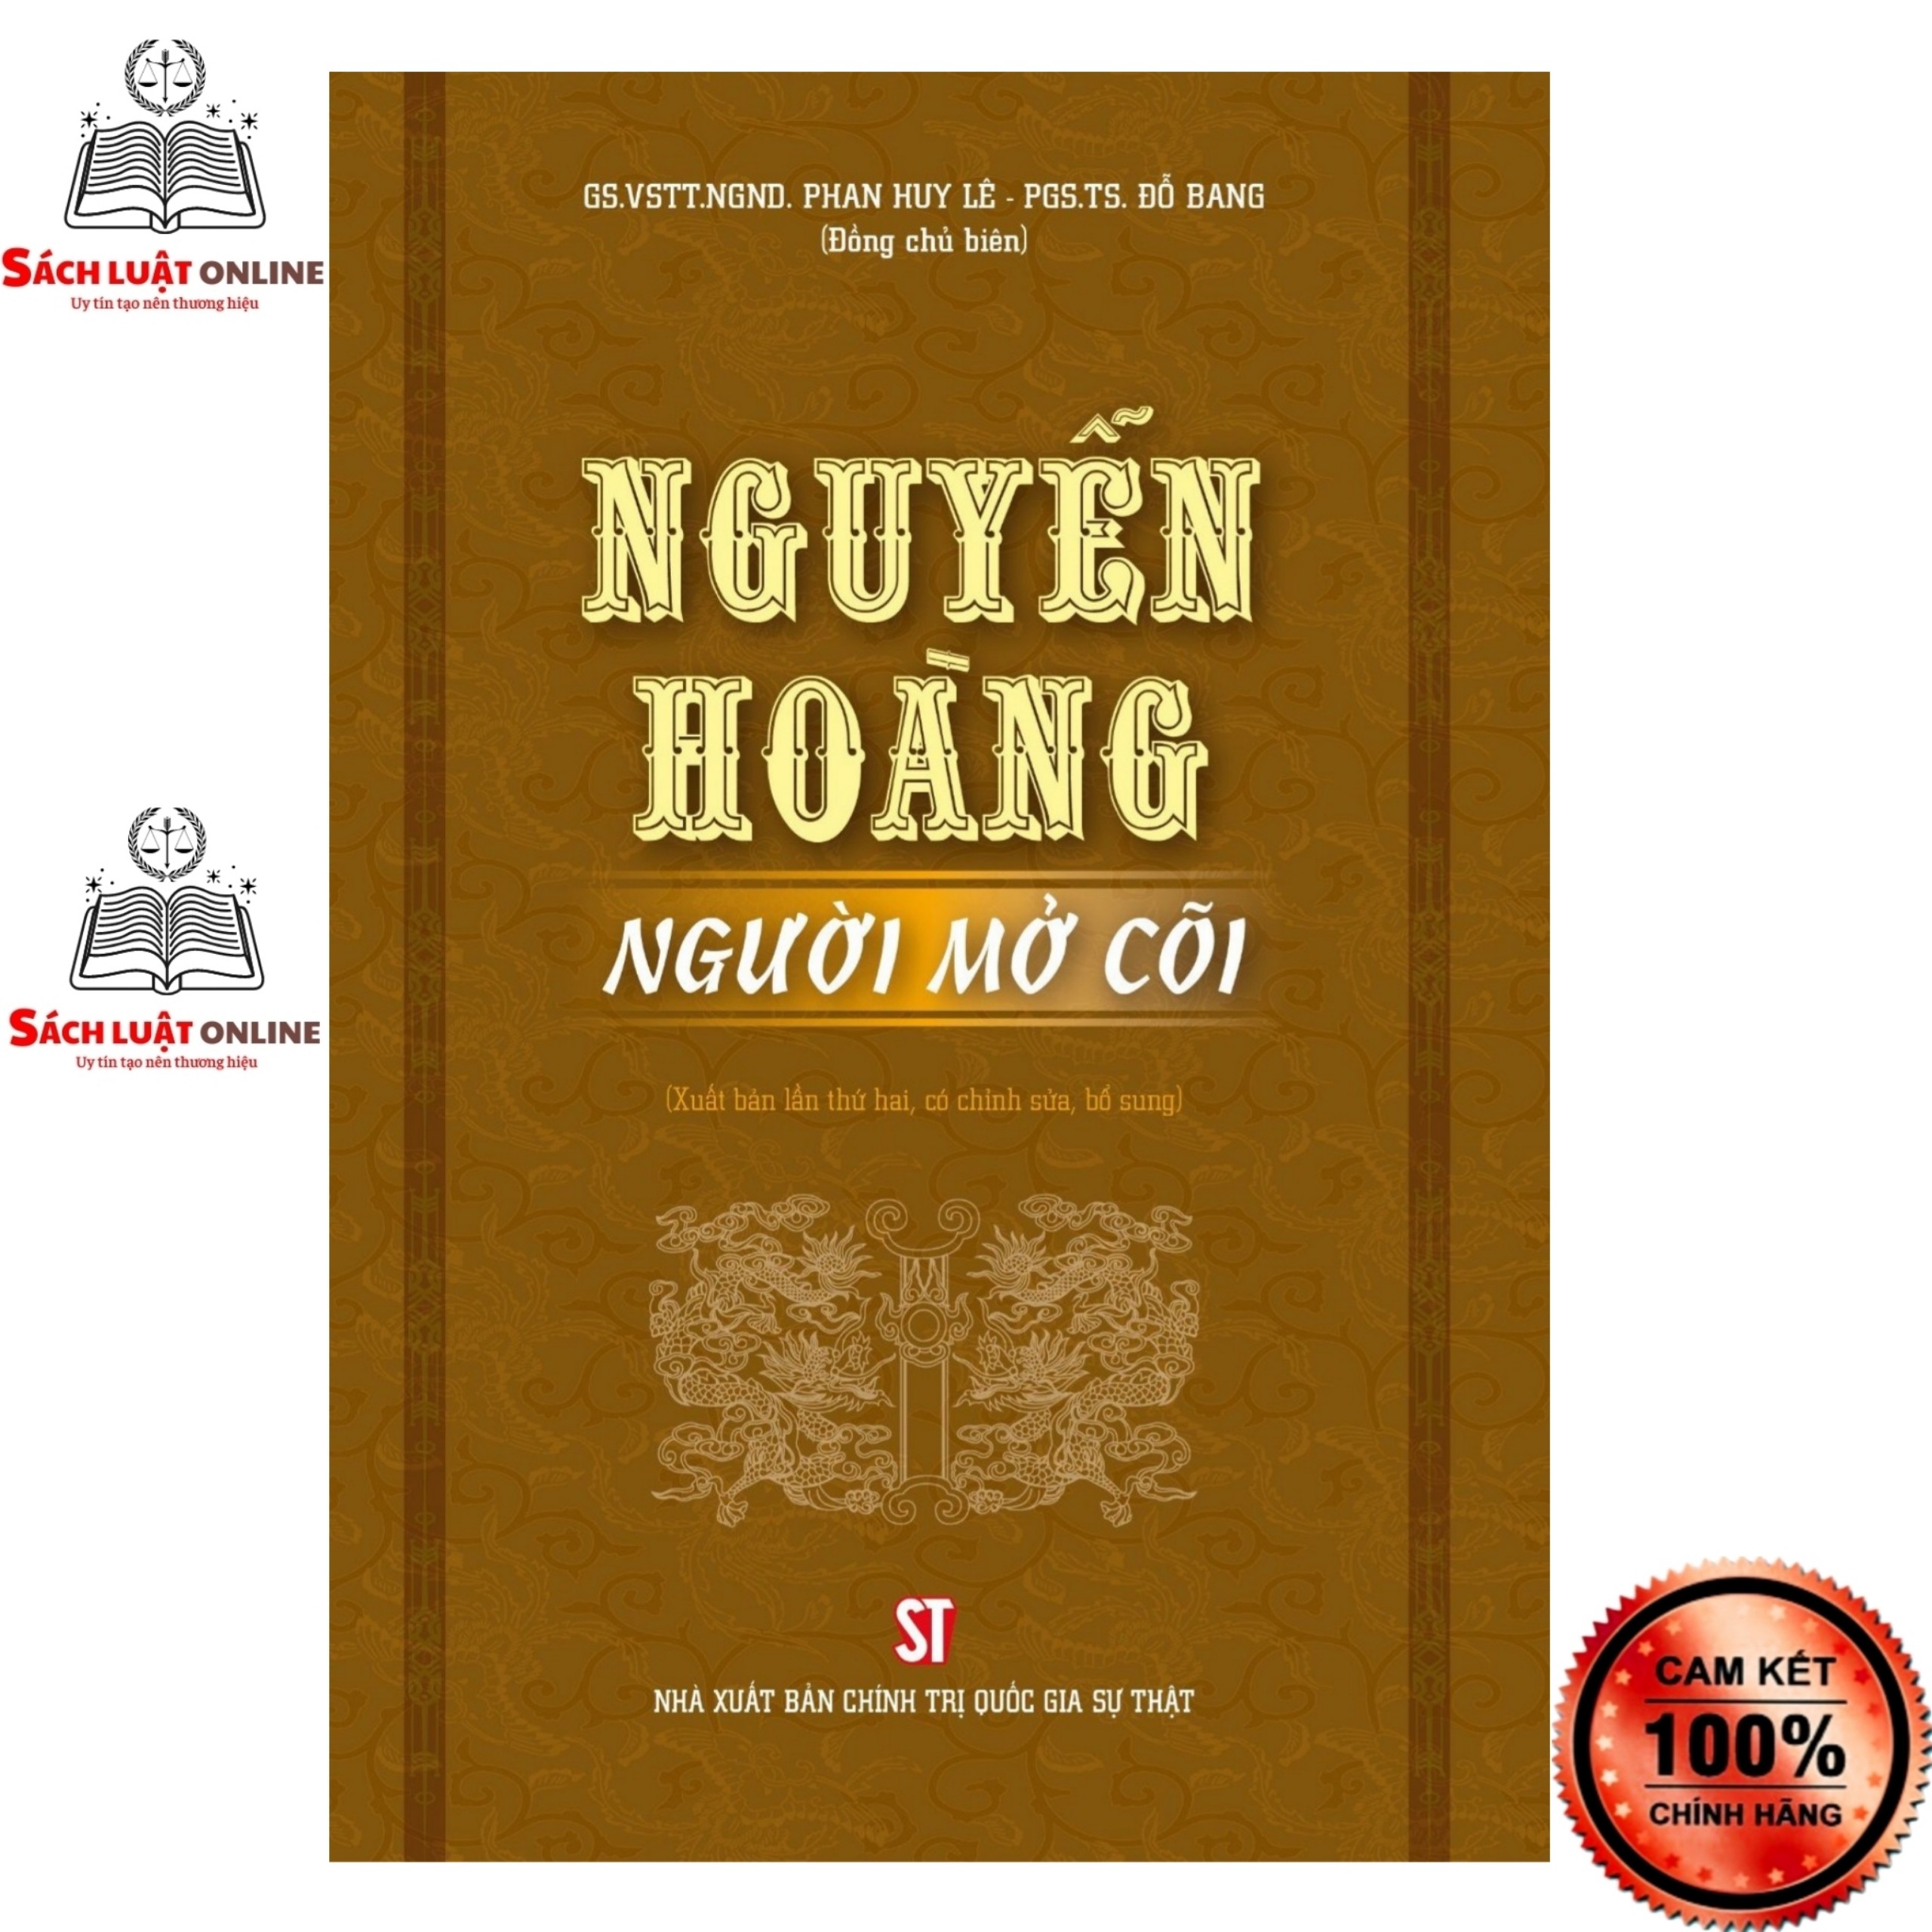 Sách - Nguyễn Hoàng người mở cõi